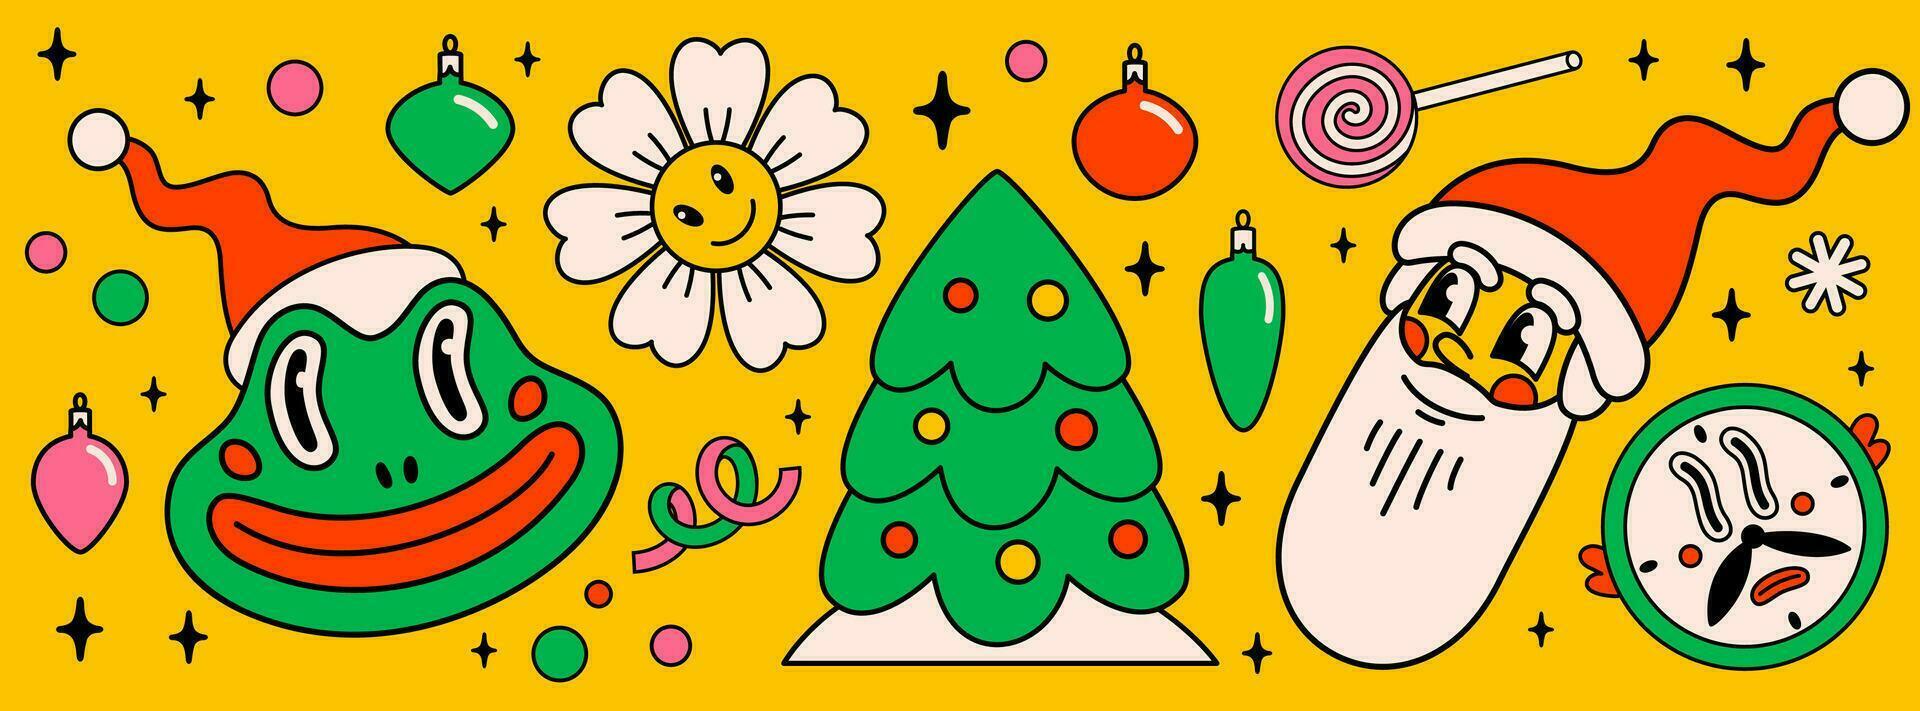 allegro Natale e contento nuovo anno imballare di di moda retrò cartone animato personaggi. Groovy hippie Natale adesivi con Santa claus, Natale albero, rana e inverno oggetti. vettore cartone animato